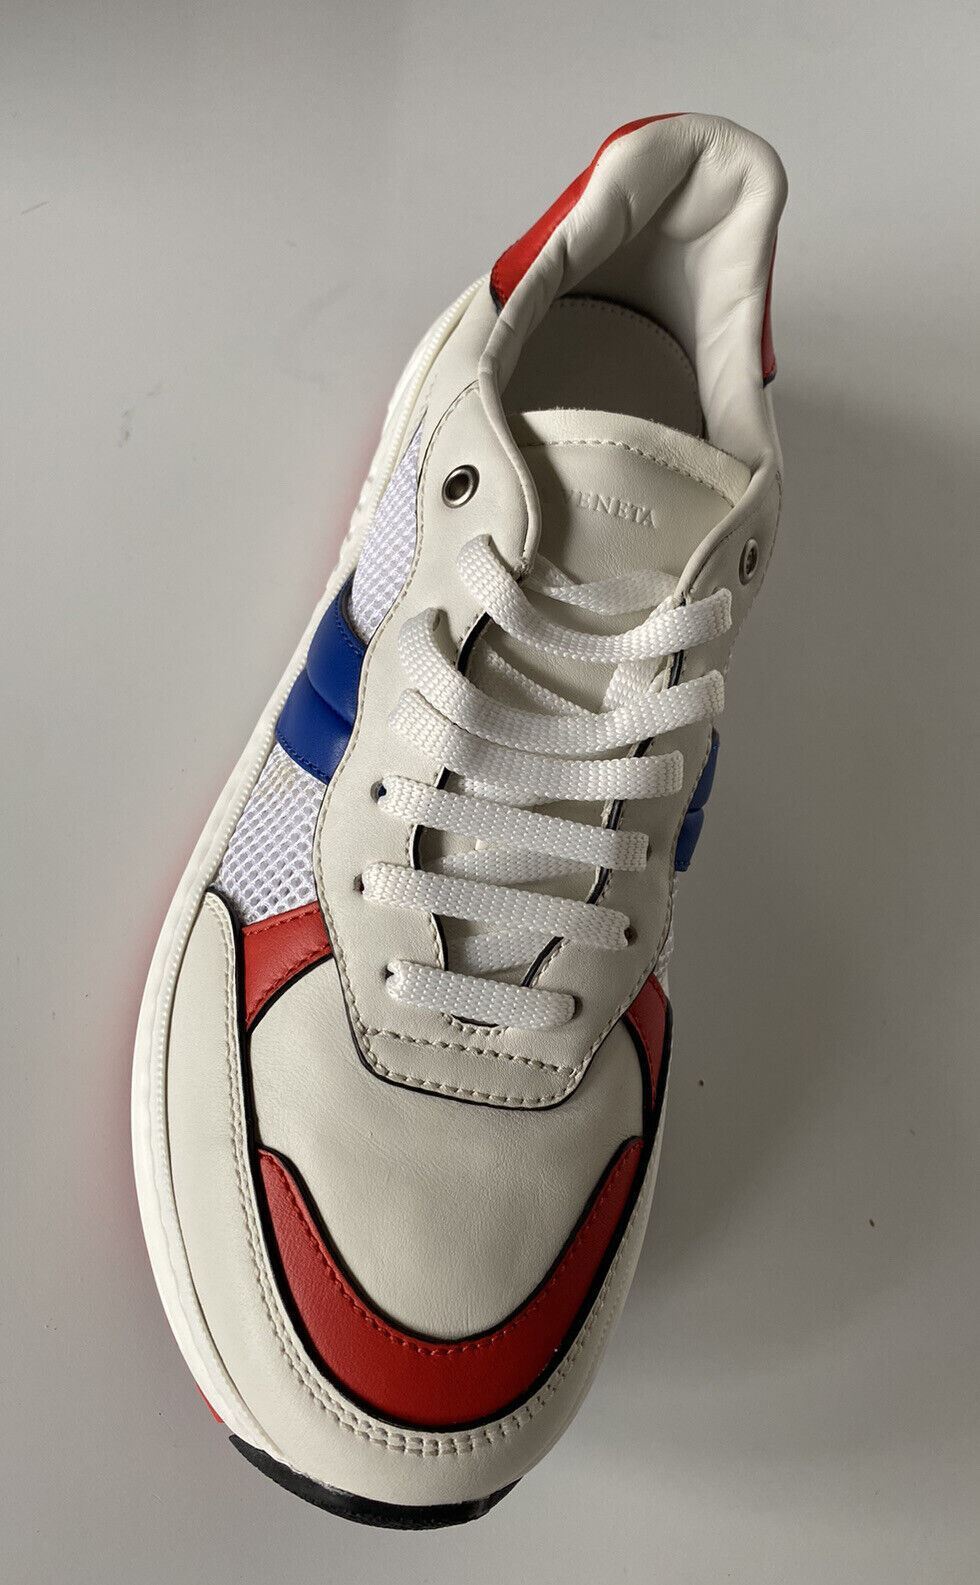 NIB Bottega Veneta Herren-Sneaker aus Leder und Mesh, Weiß/Rot/Blau, 7 US 565646 9080 